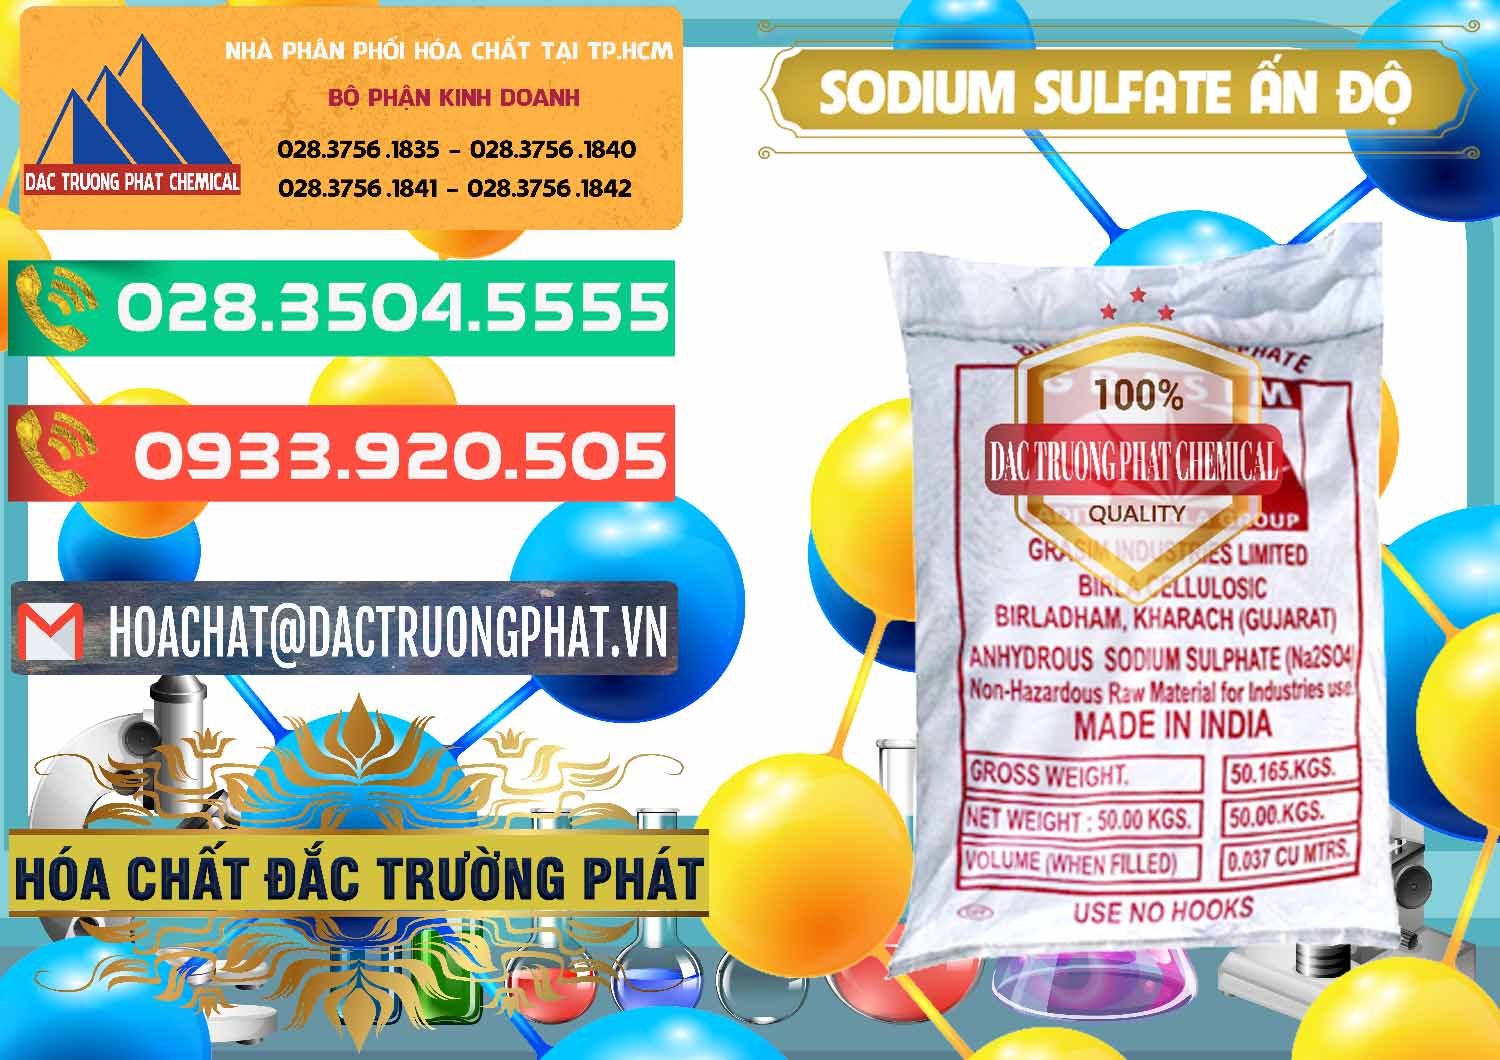 Công ty cung cấp & bán Sodium Sulphate - Muối Sunfat Na2SO4 Aditya Birla Grasim Ấn Độ India - 0462 - Chuyên phân phối _ bán hóa chất tại TP.HCM - congtyhoachat.com.vn